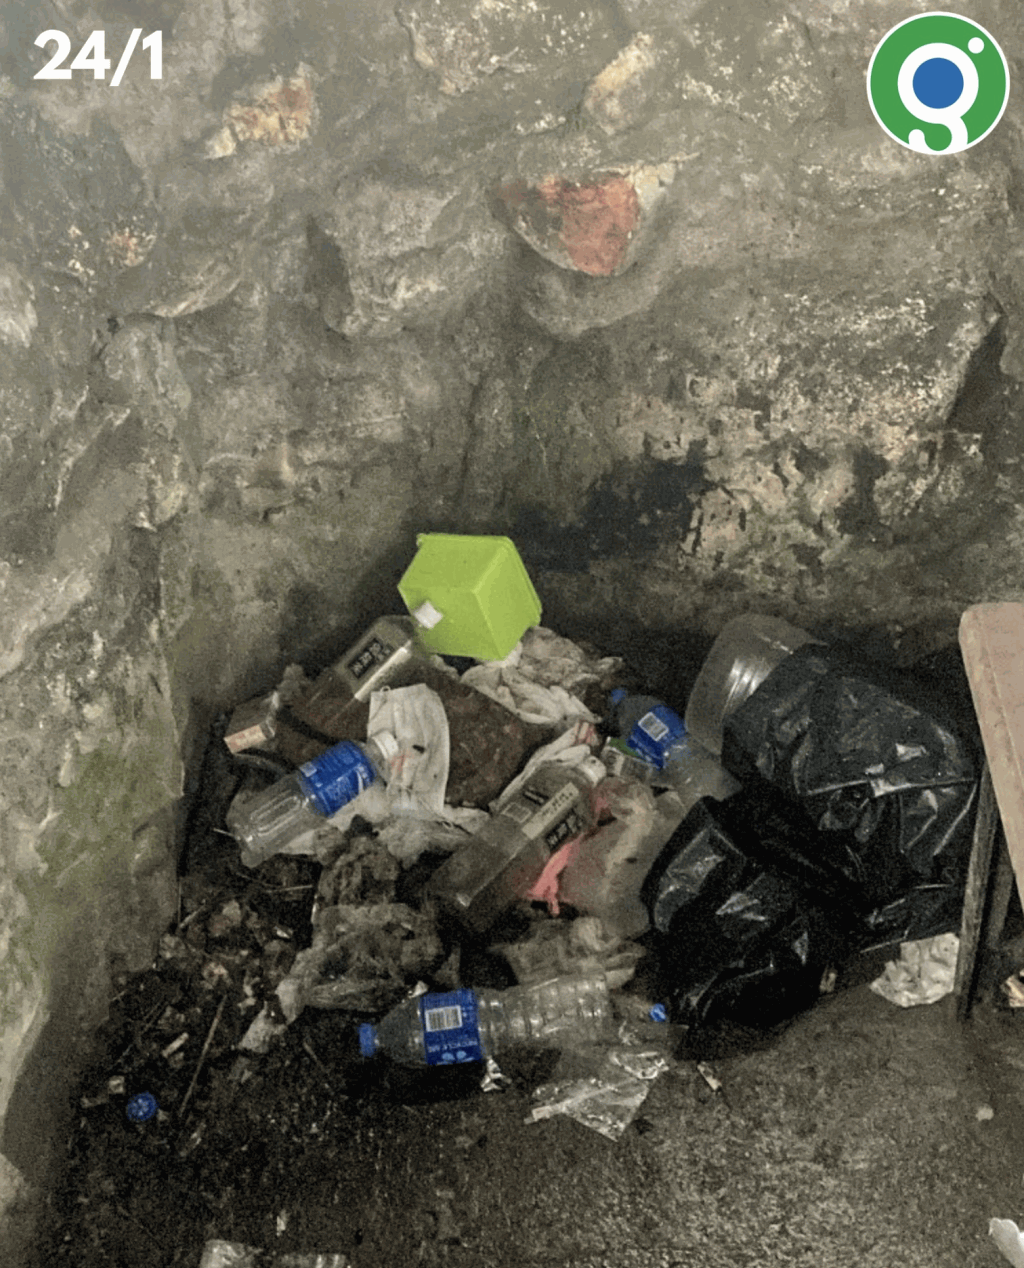 攝於1月24日，在鳳凰山頂許風處的一角堆滿垃圾，全部都是水樽、紙巾及外賣盒。「綠惜地球」fb圖片